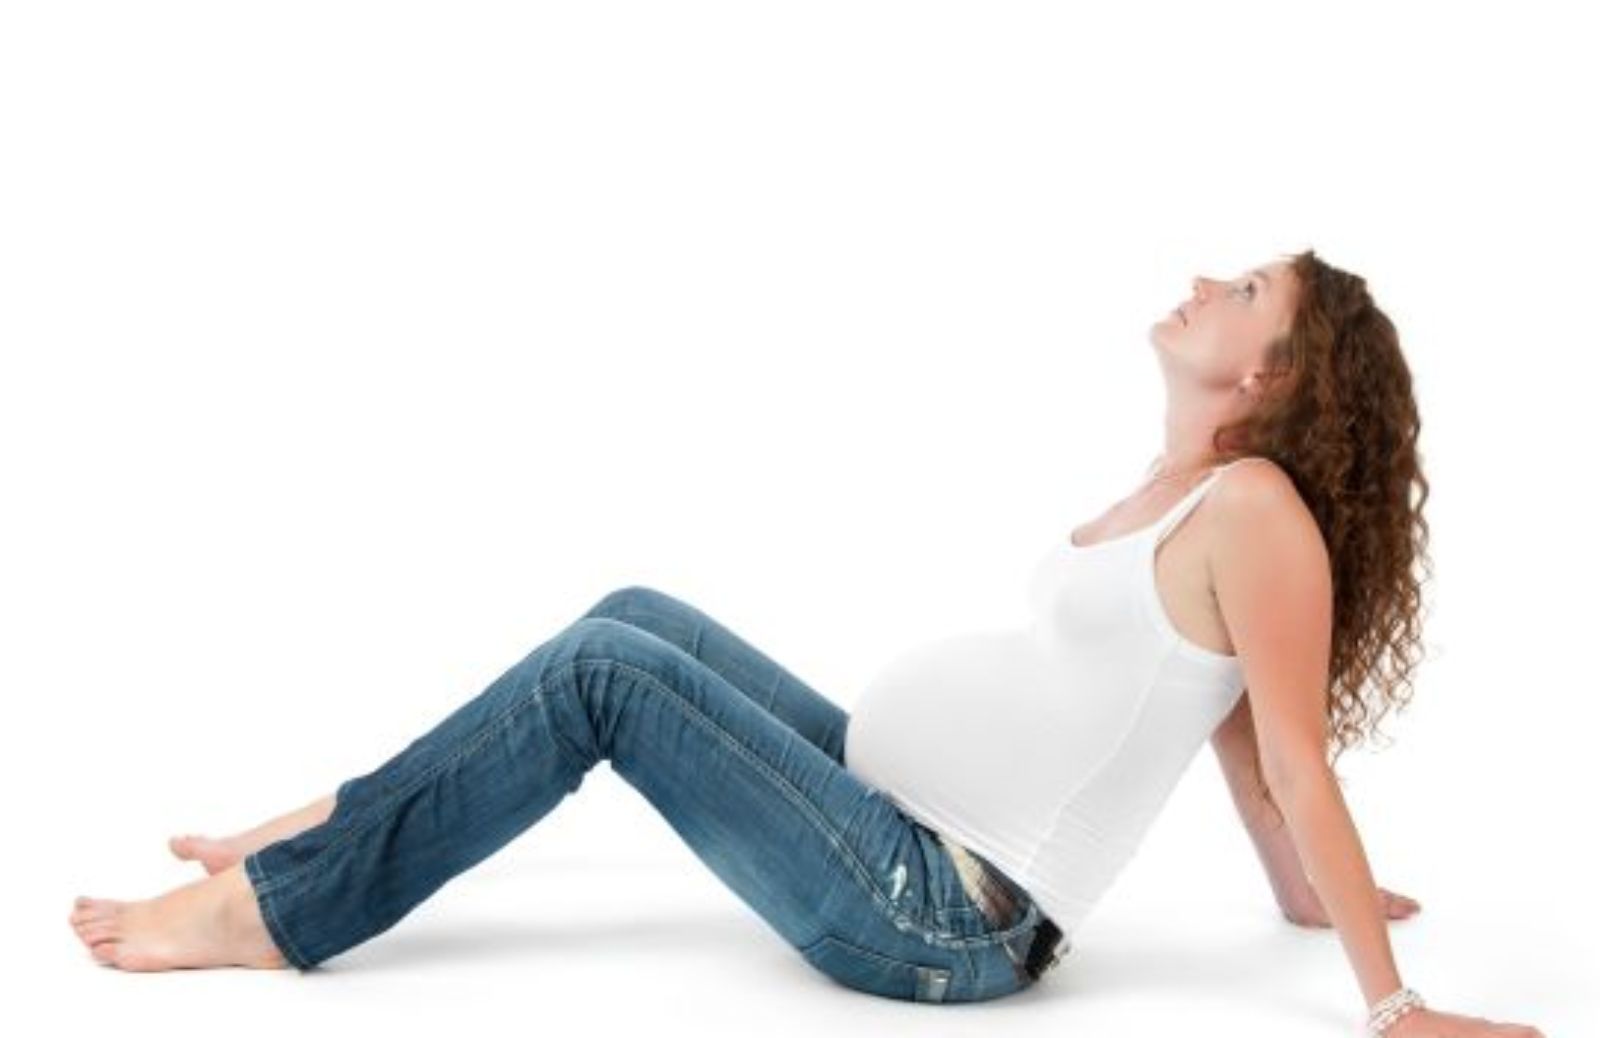 Come fare pilates in gravidanza: workout - secondo trimestre